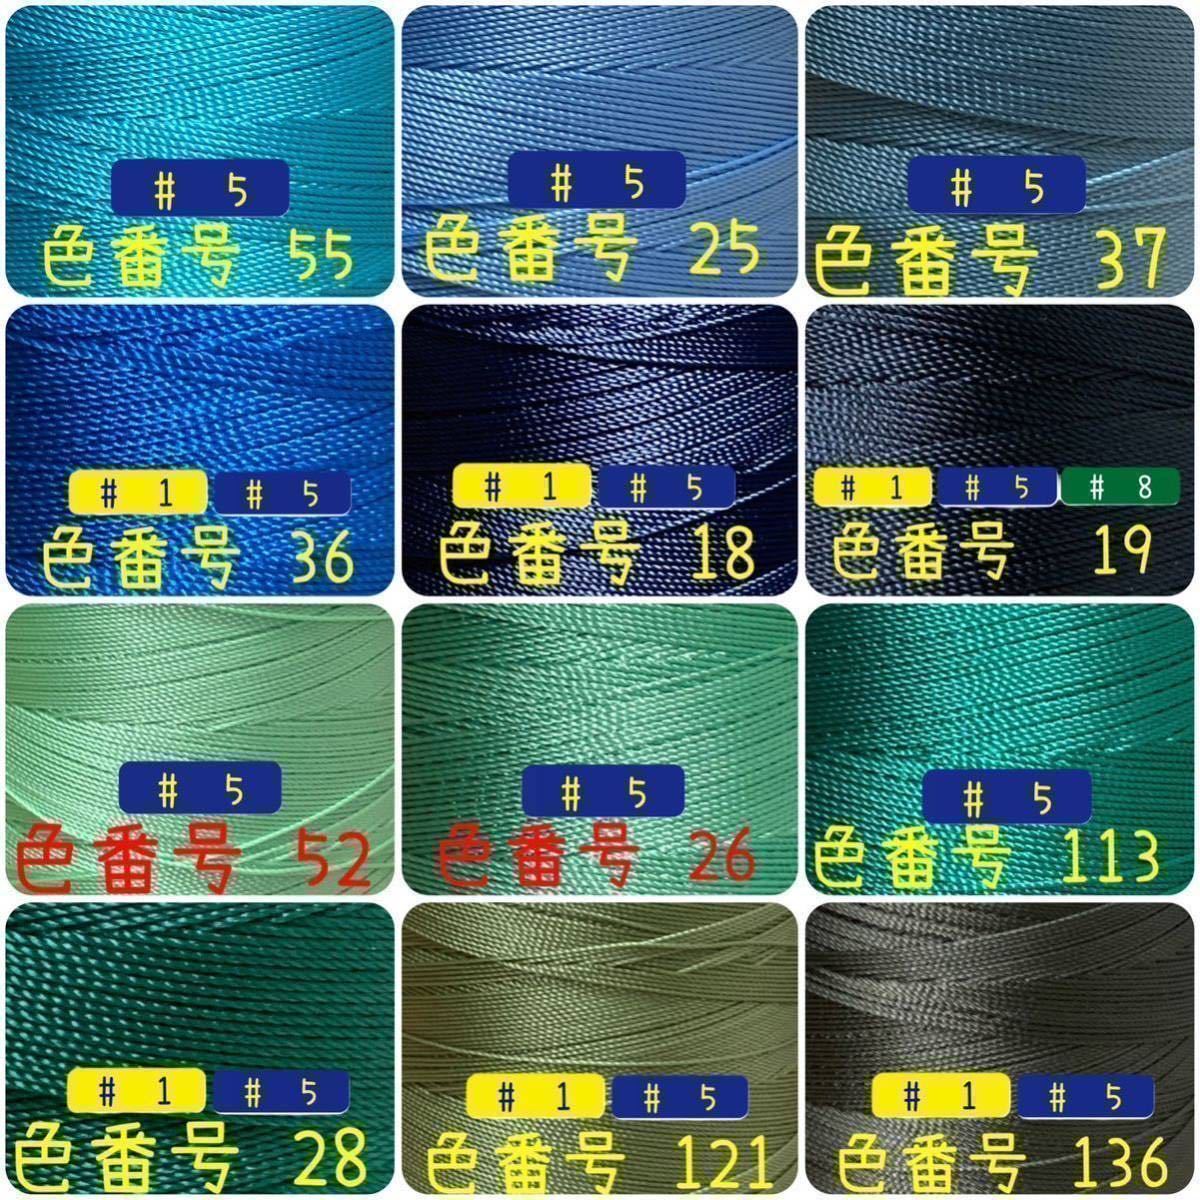 【3点普通郵便】ビニモMBT #1 #5 #8 レザークラフト手縫い糸_画像5